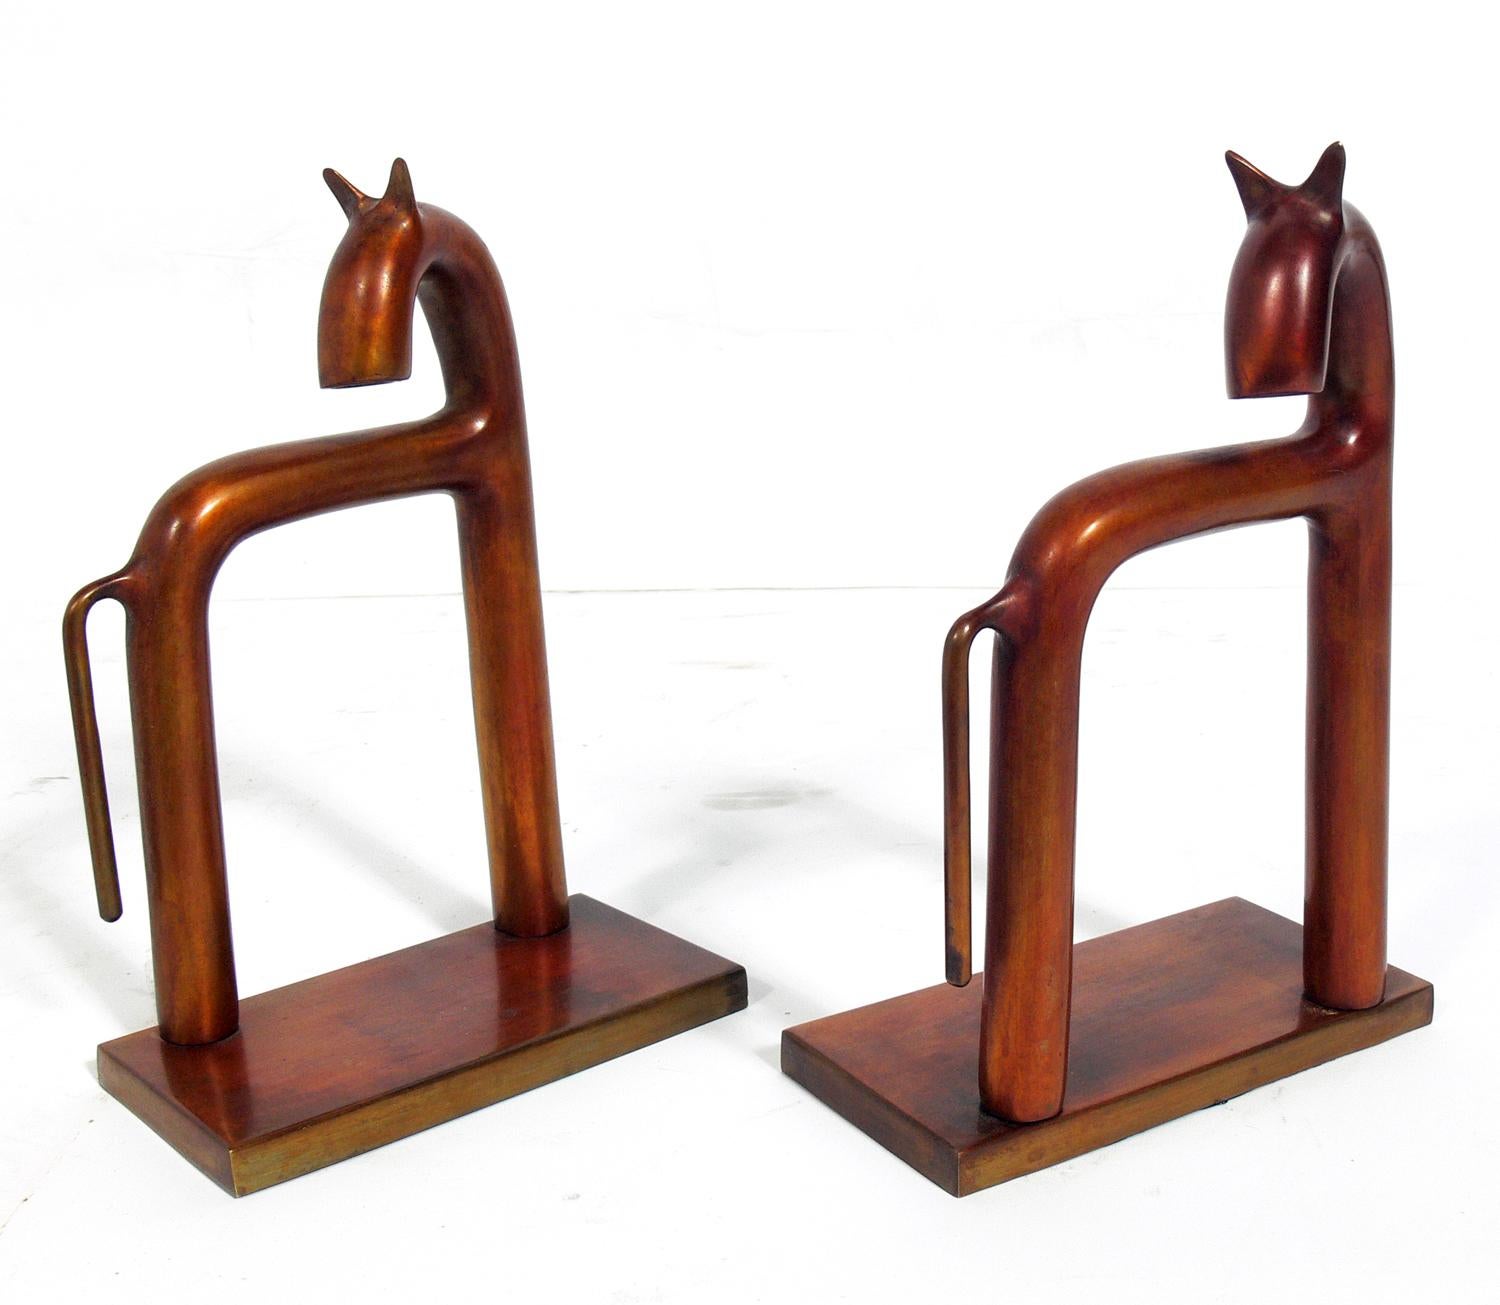 Paar skulpturale Art-Déco-Buchstützen, entworfen von Walter Von Nessen für Chase, unsigniert, amerikanisch, ca. 1930er Jahre. Man nimmt an, dass sie aus Messing gefertigt sind, aber eine warme bronzefarbene Patina angenommen haben.